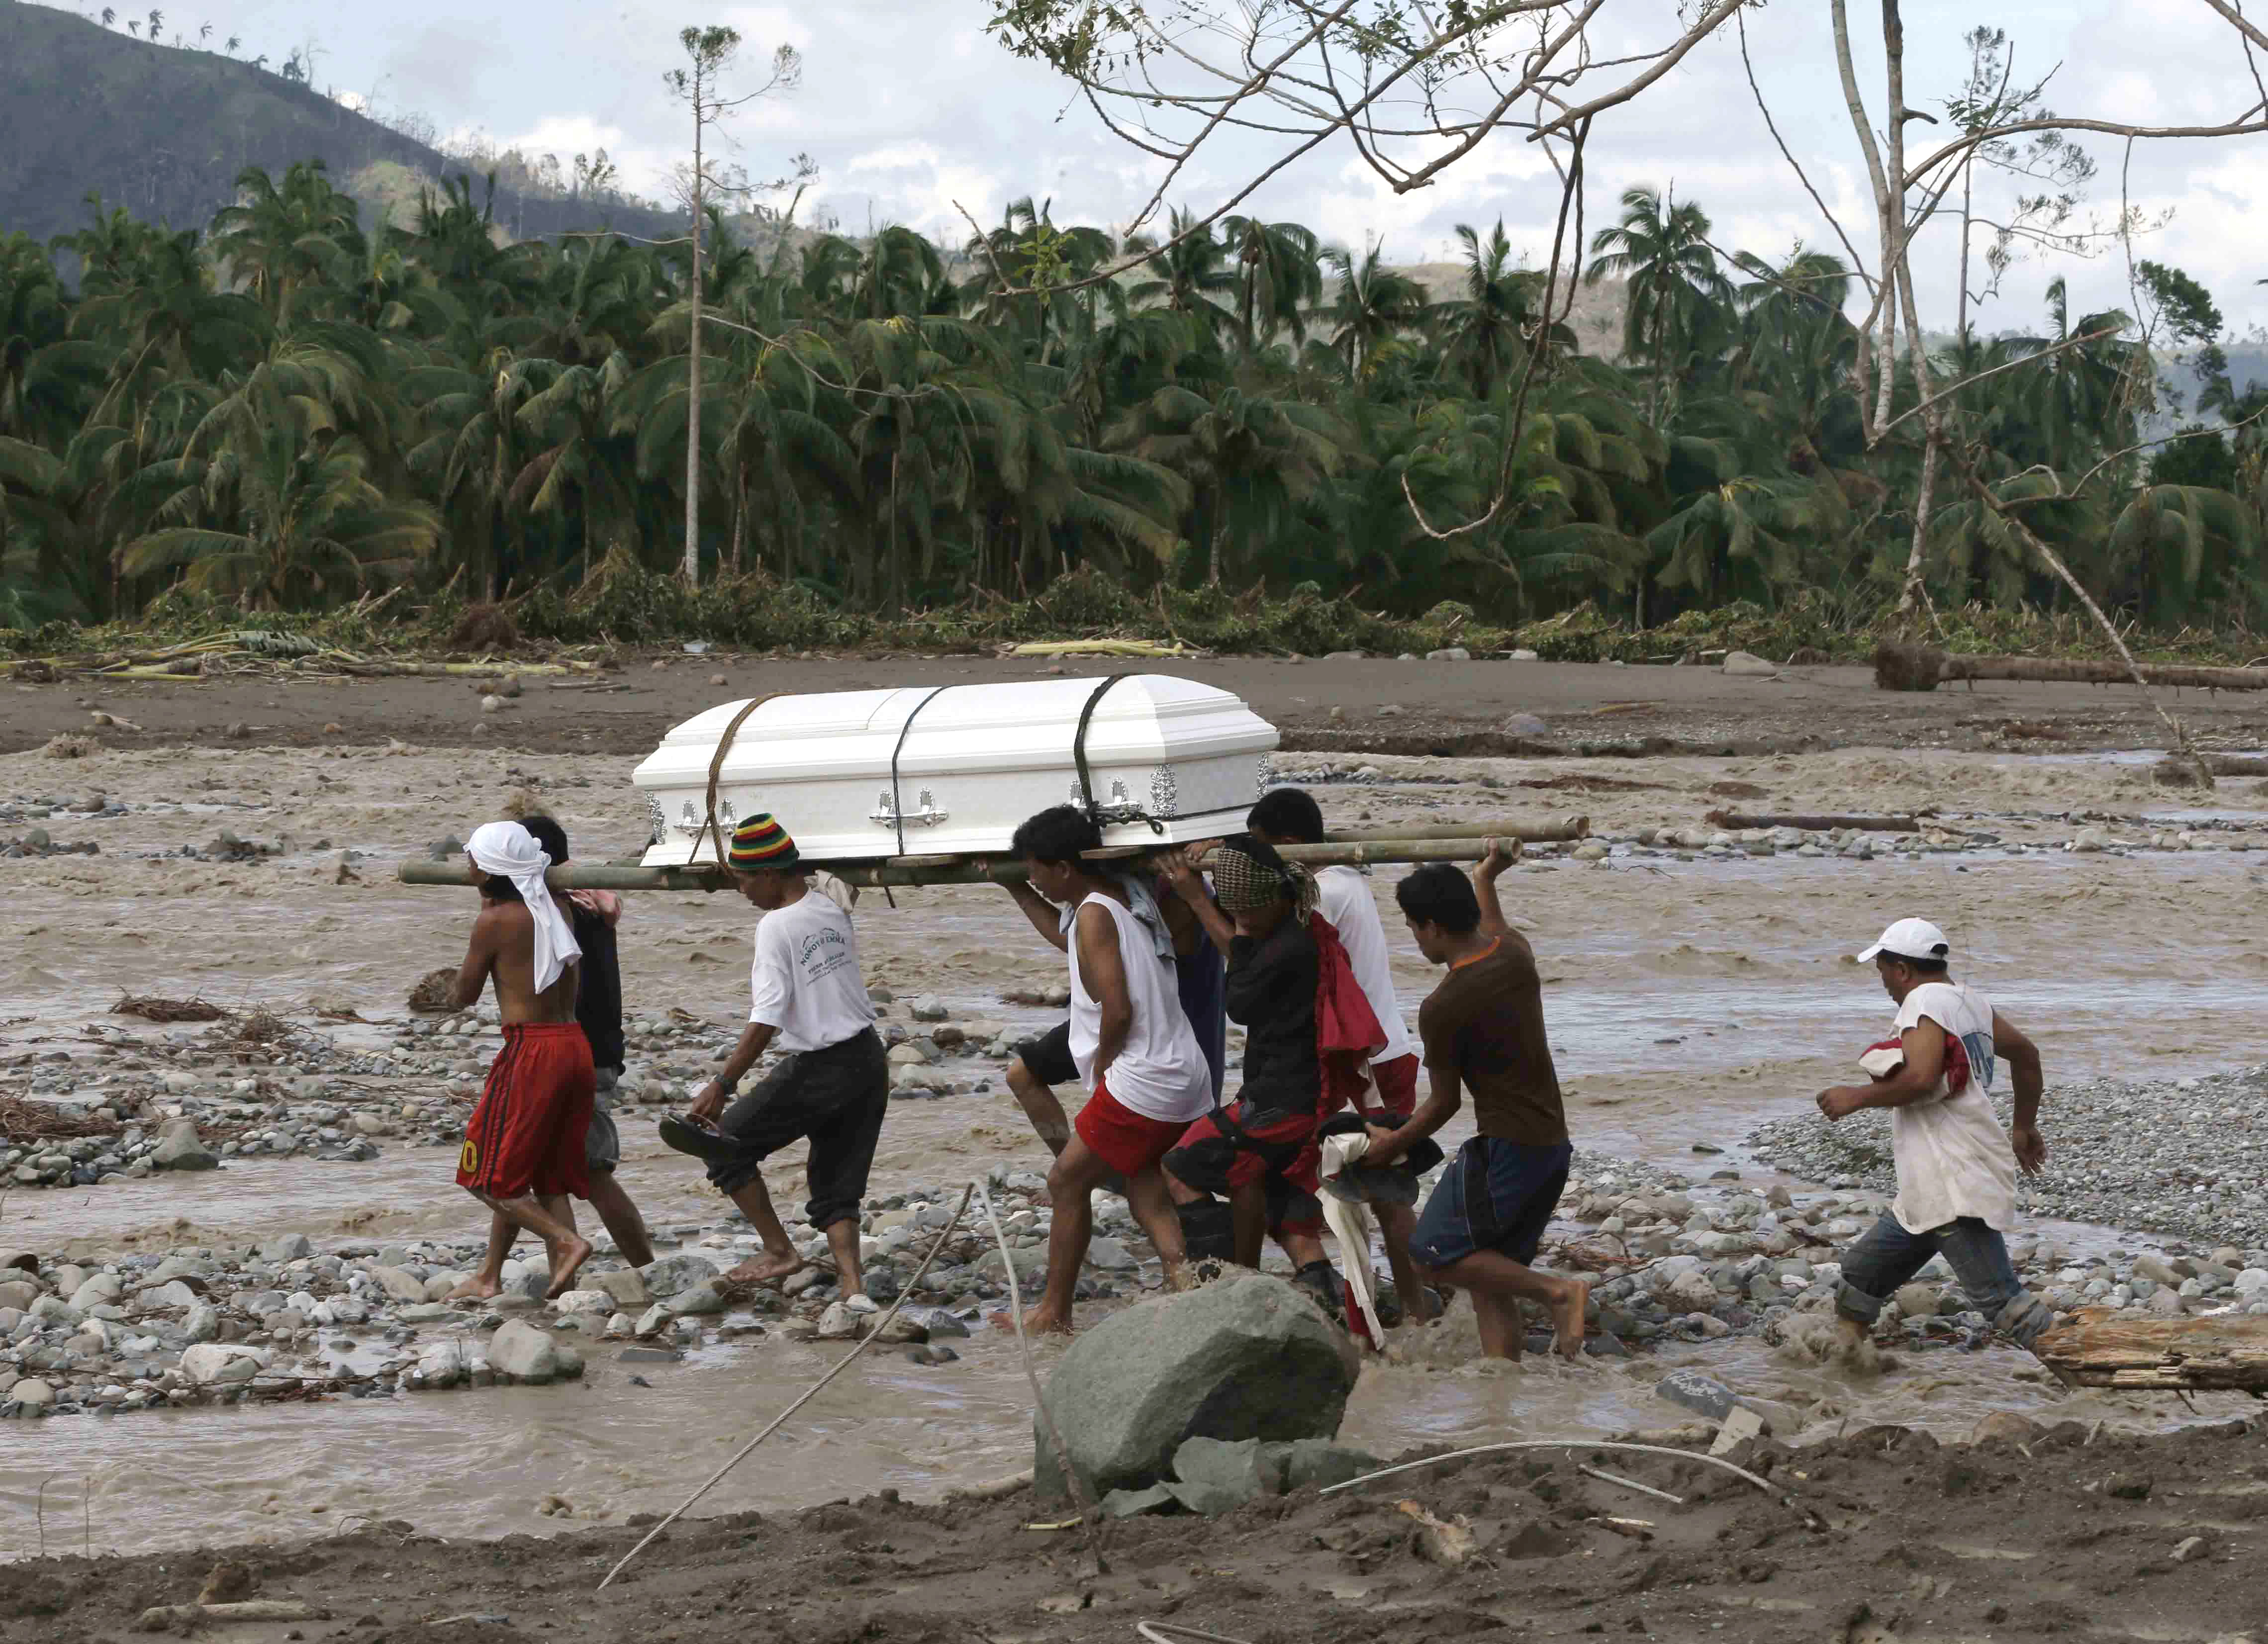 Φιλιππίνες: Θάβουν τους νεκρούς τους – εκατοντάδες δεν έχουν αναγνωριστεί